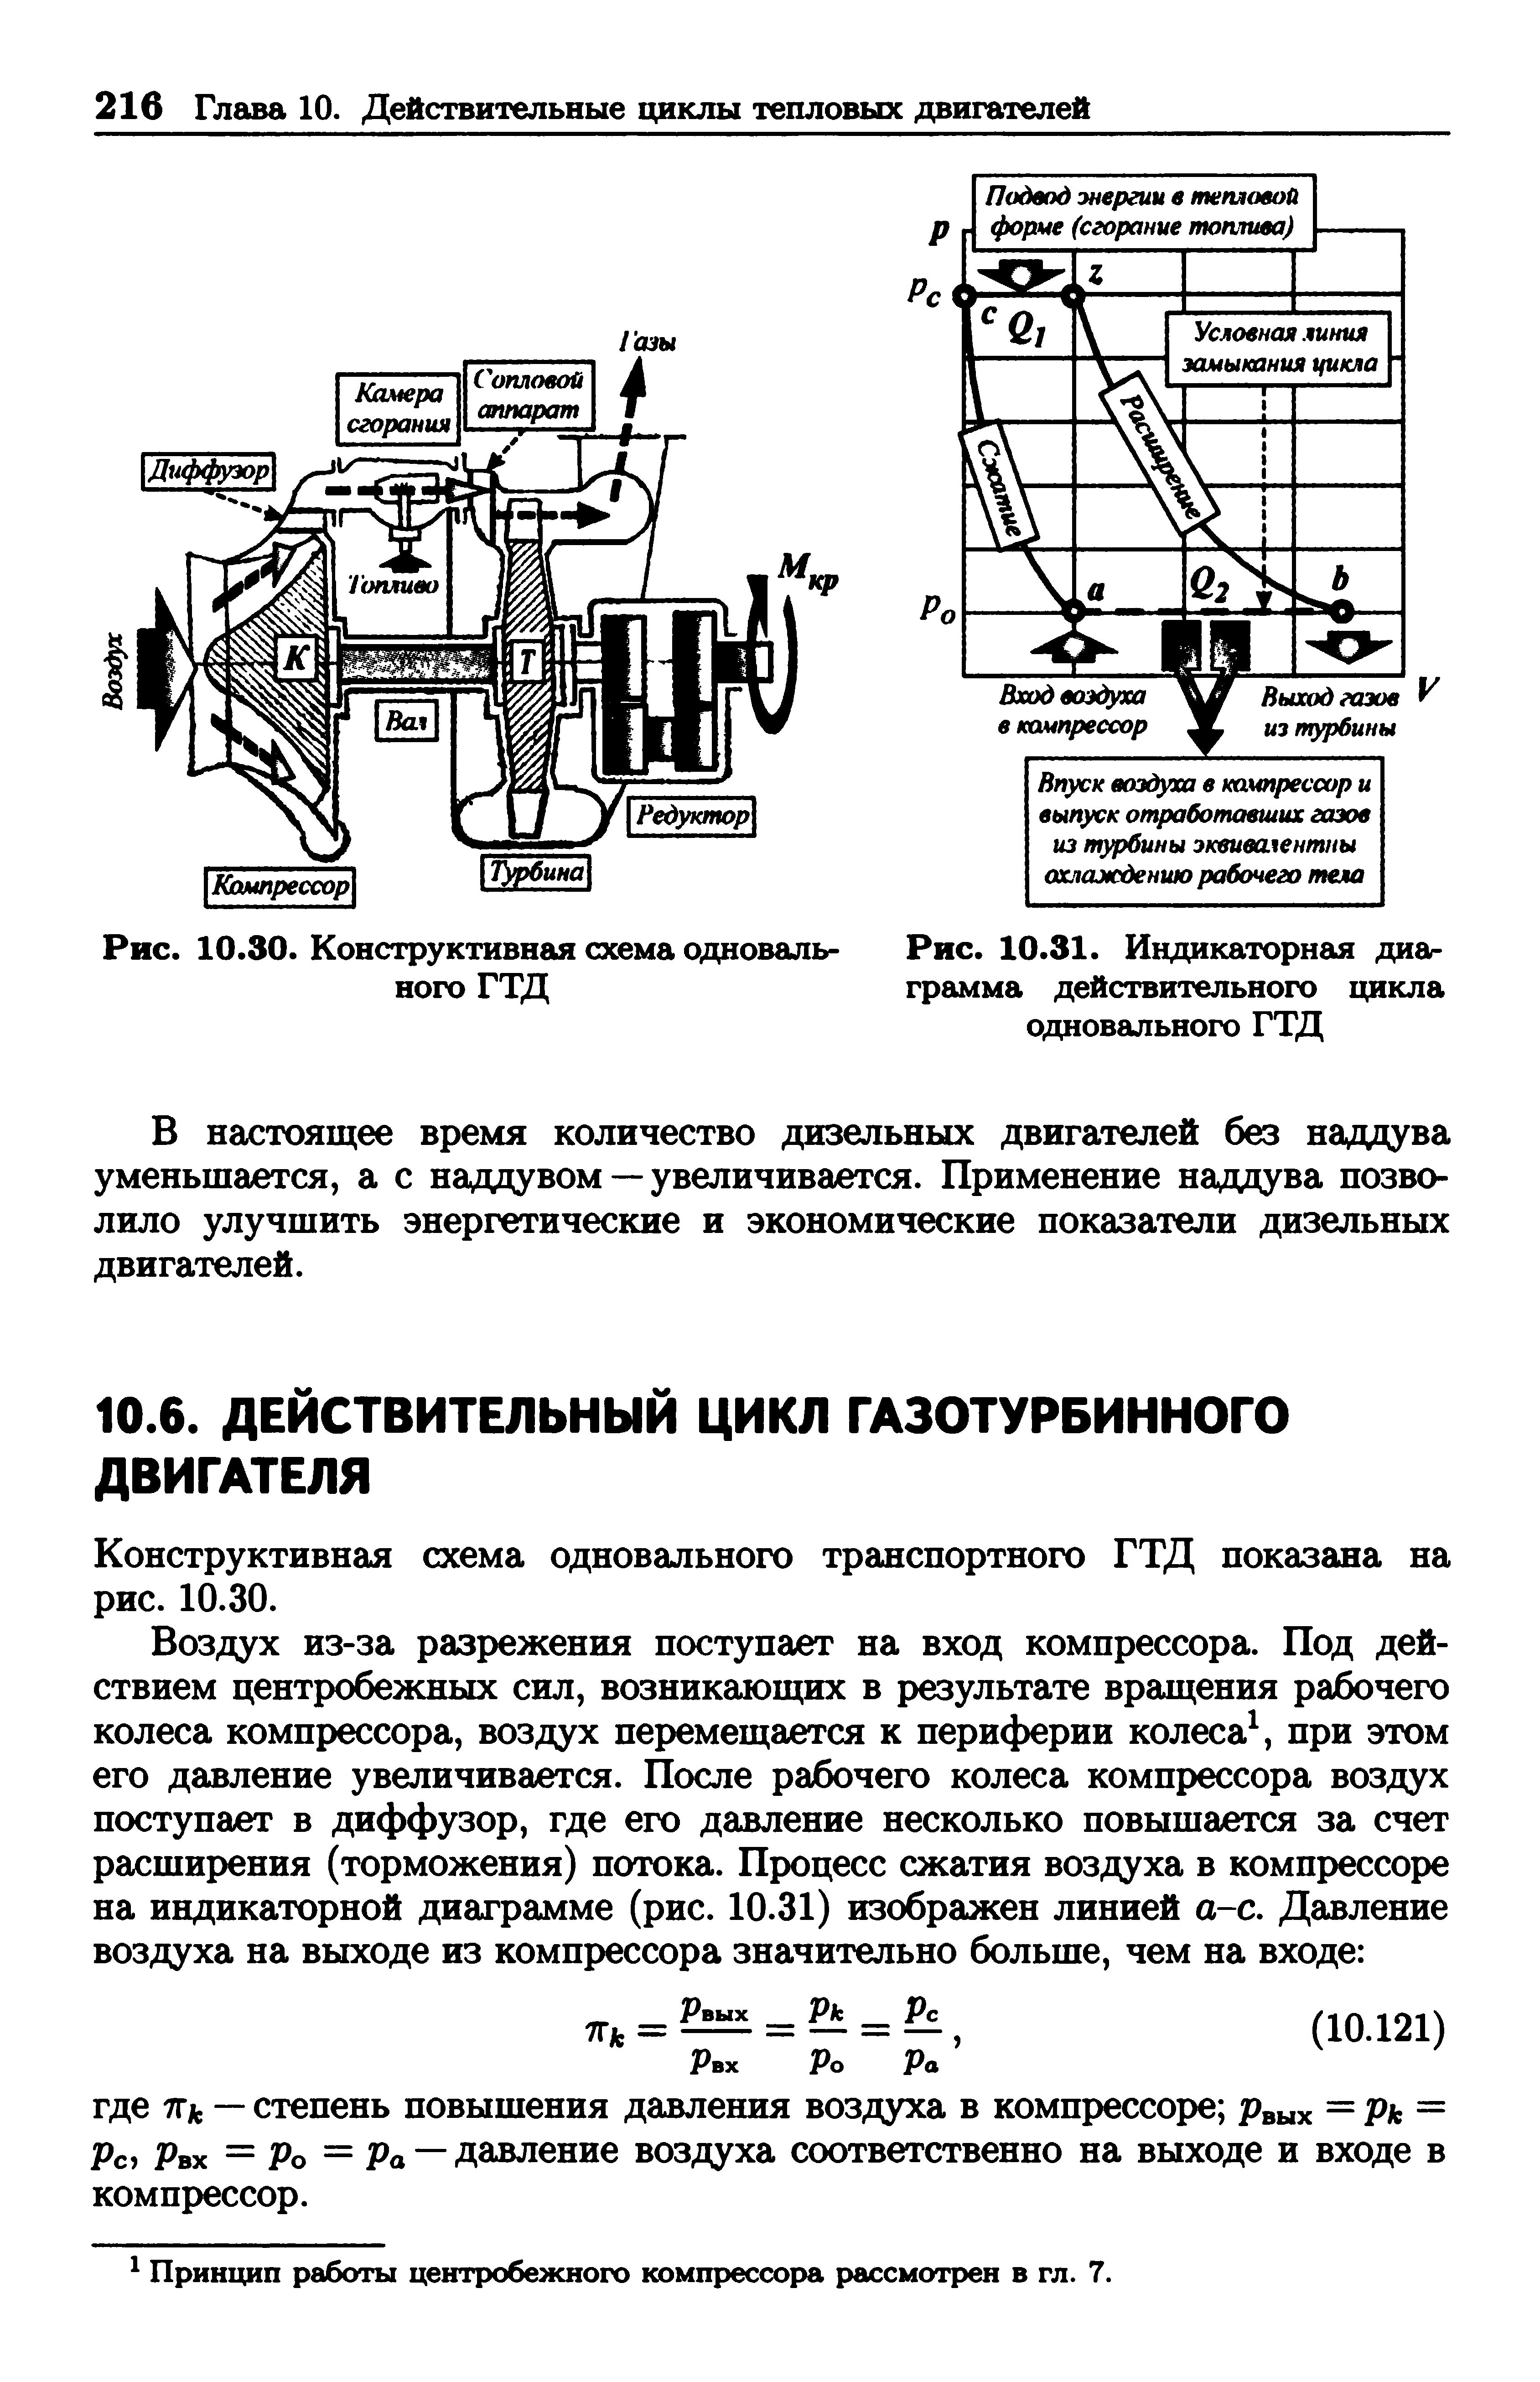 Конструктивная схема одновального транспортного ГТД показана на рис. 10.30.
